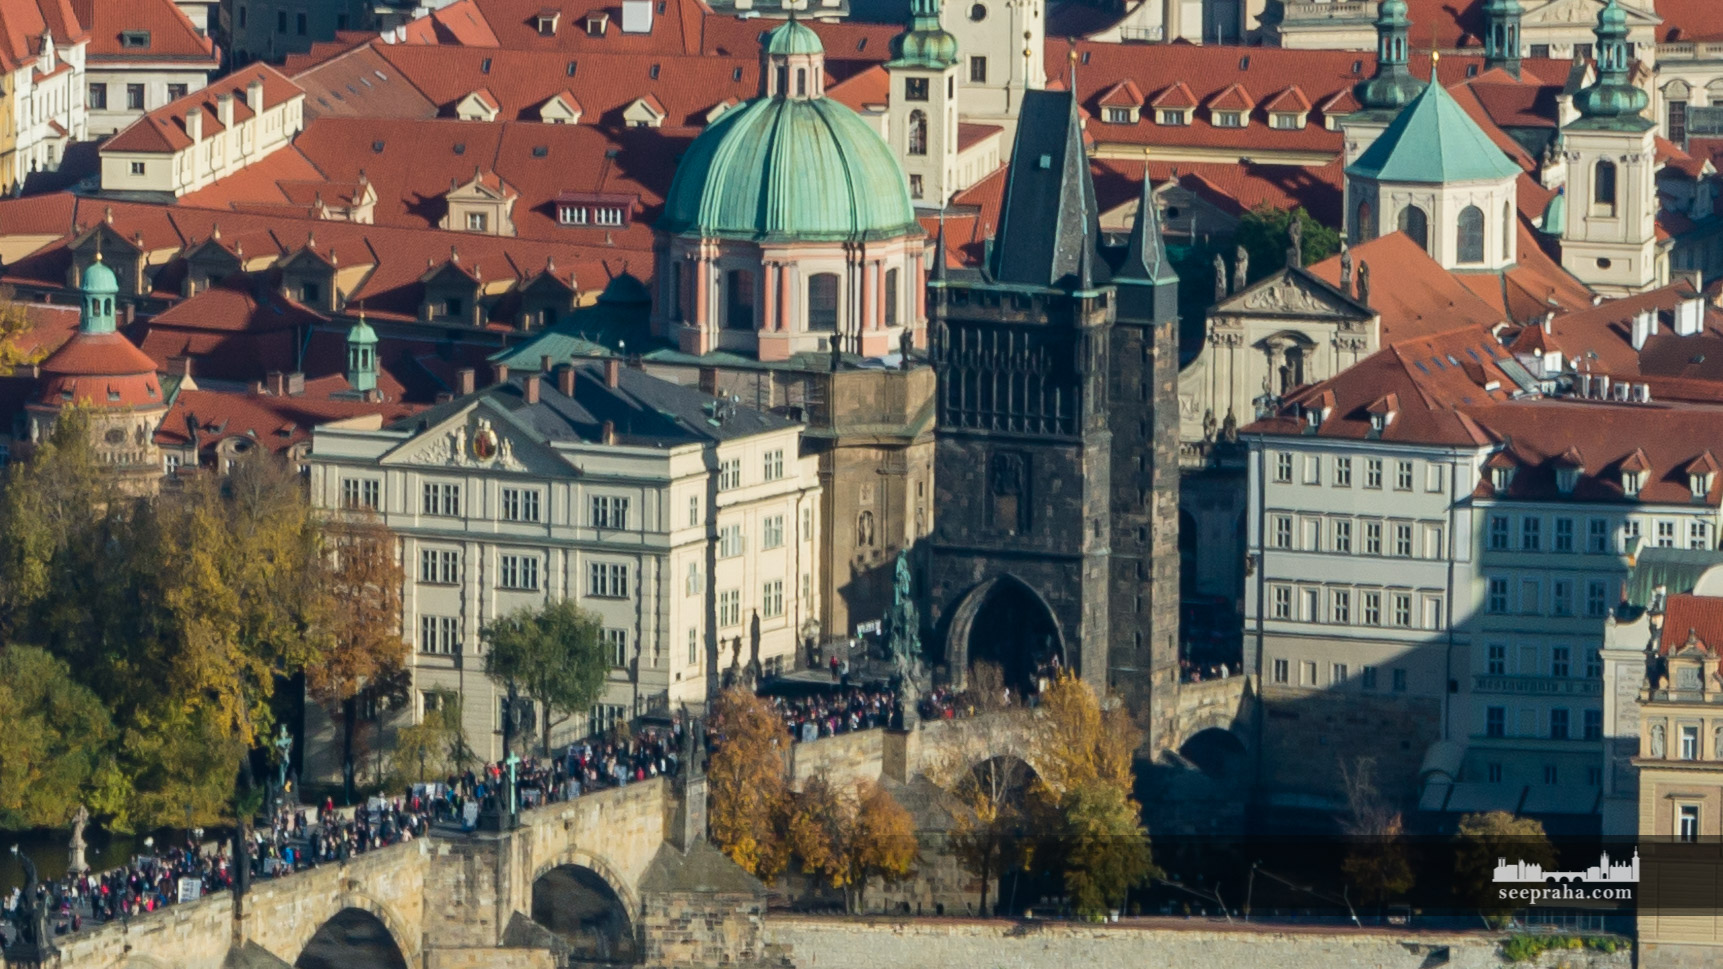 Turnul podului din orașul vechi, Praga, Cehia